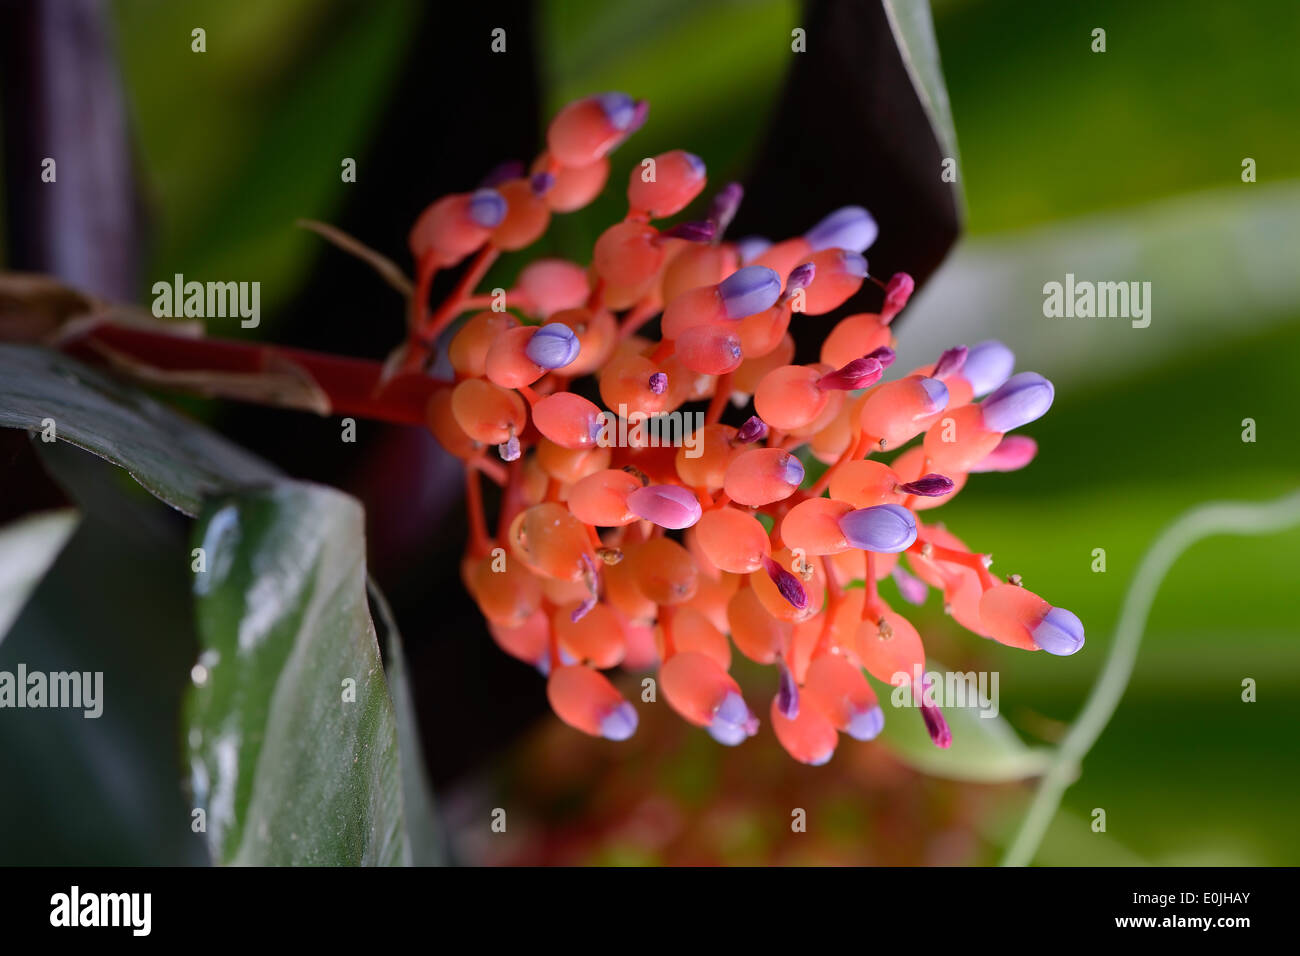 Blüte von Aechmea miniata, verschiedenfarbige Lanzenrosette, Bromelie, Vorkommen Südamerika Foto Stock